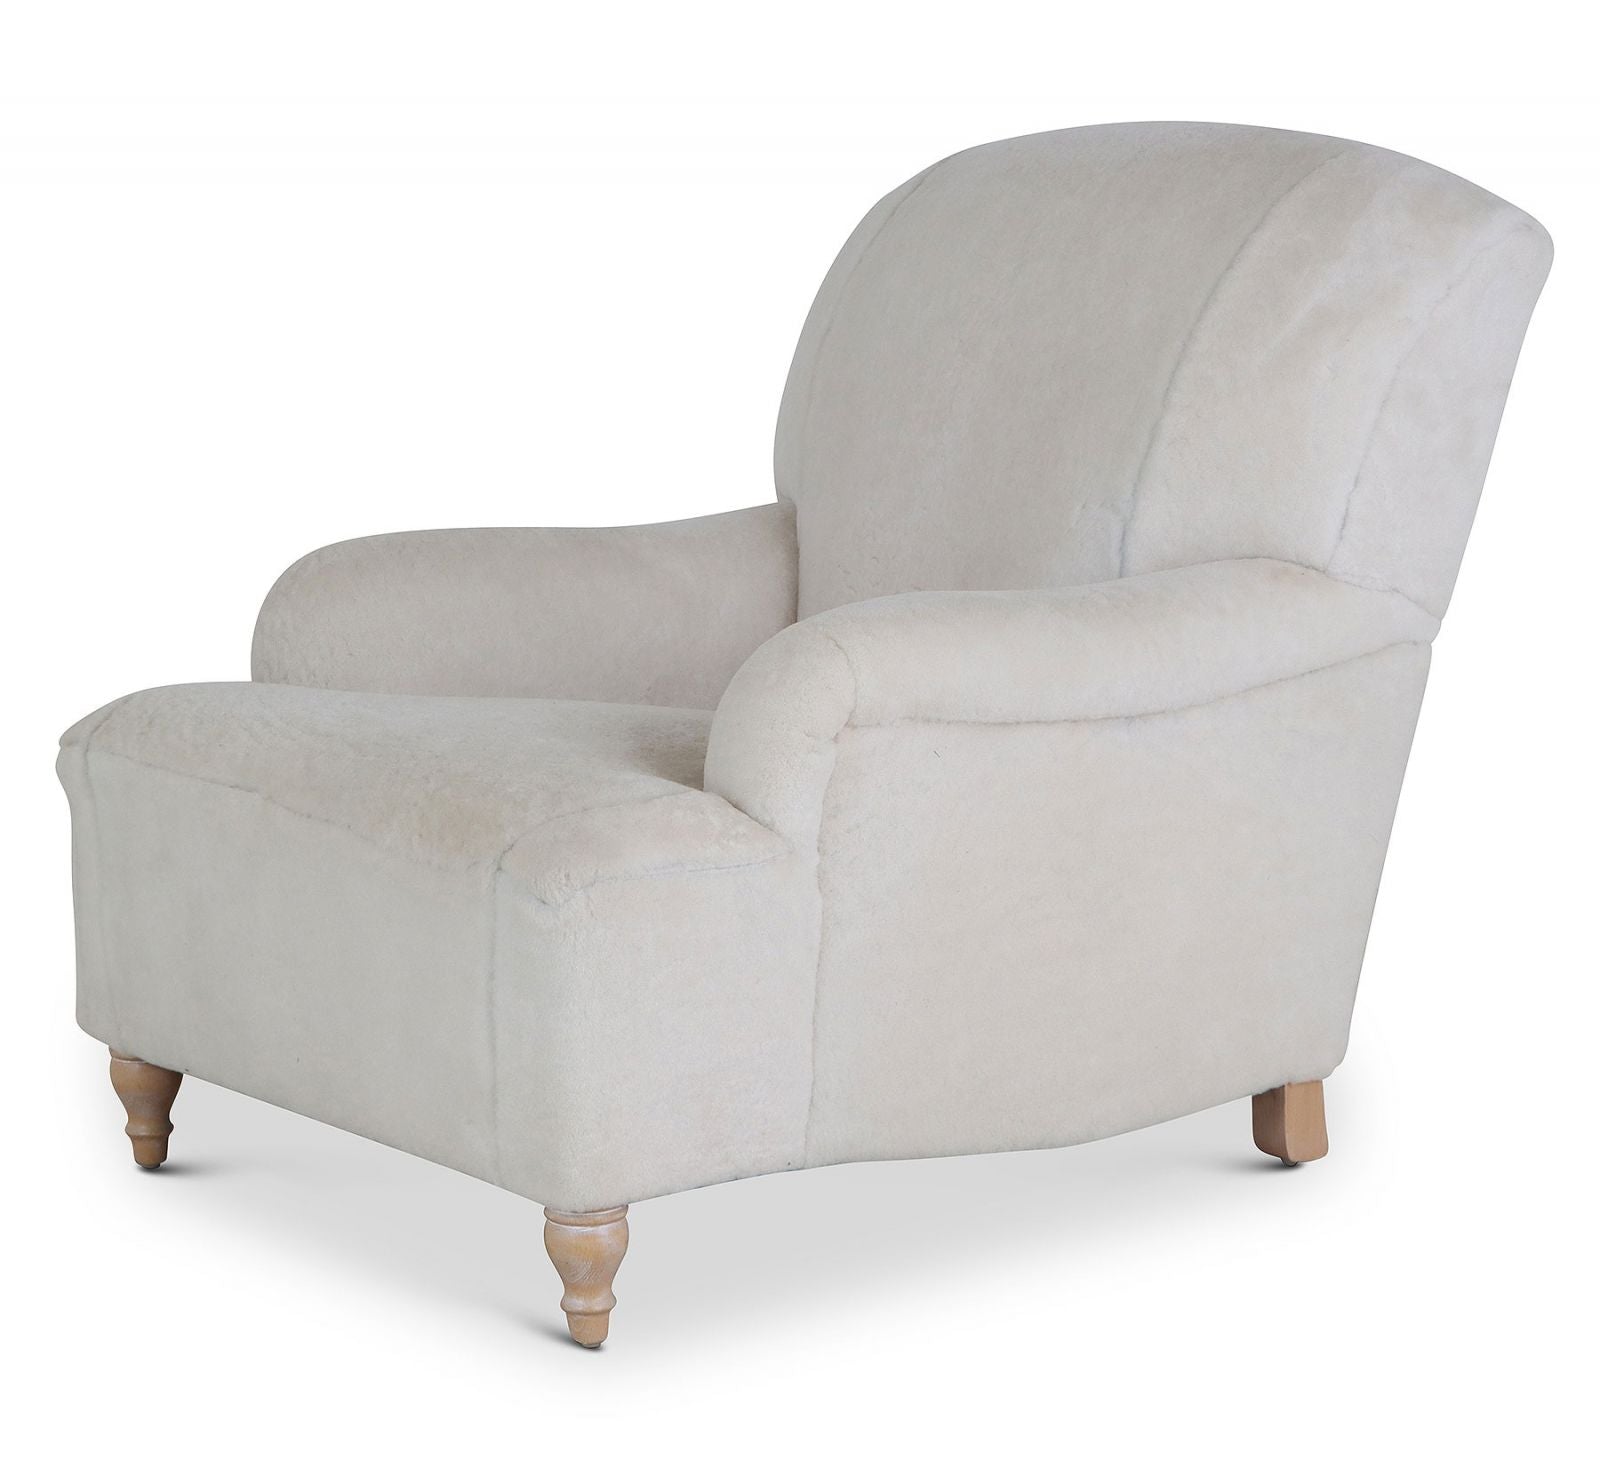 Milton 1930s style easy chair in sheepskin wool